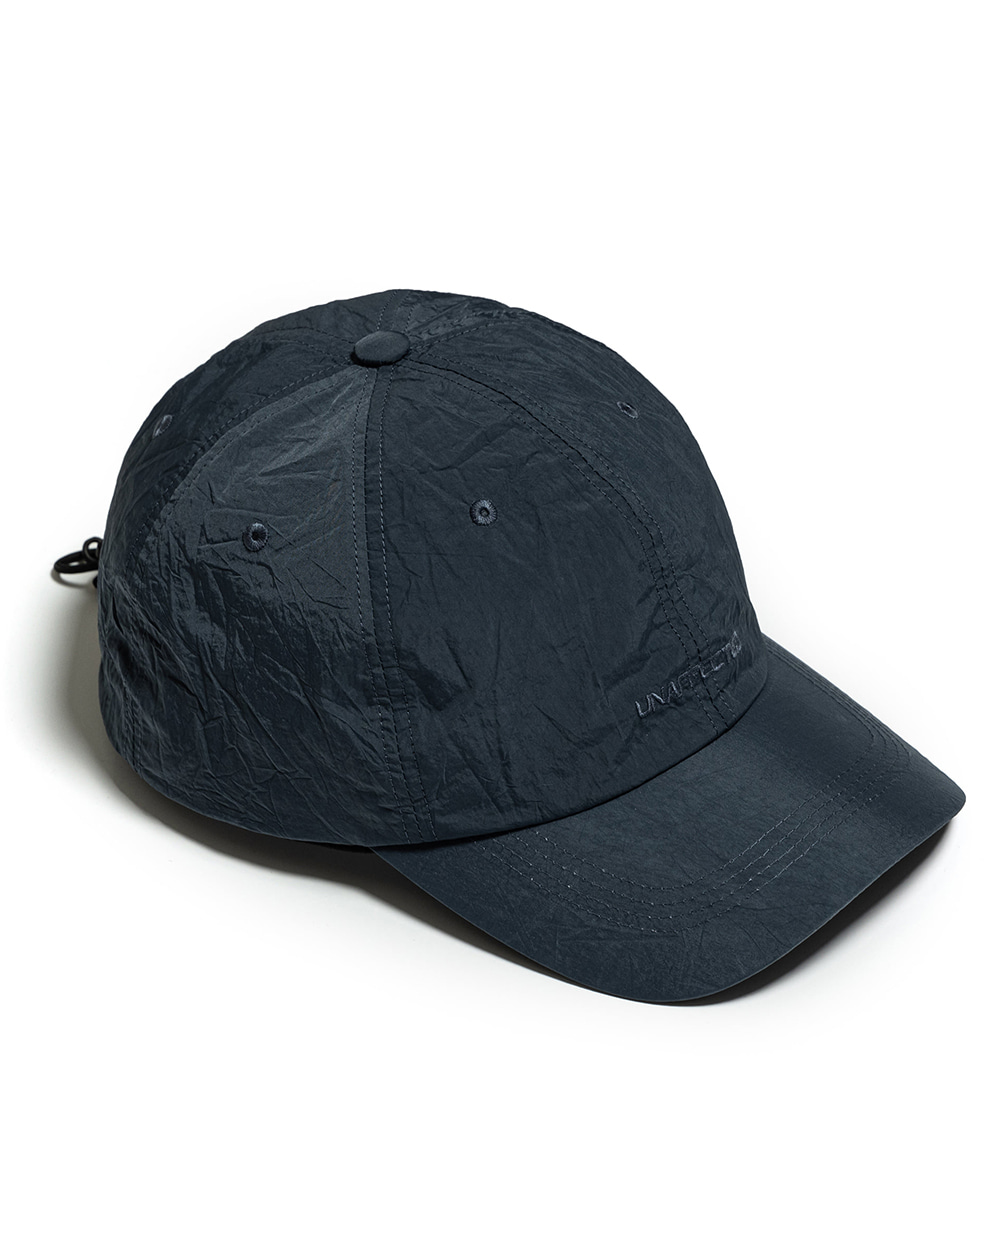 언어펙티드 LOGO DRAWSTRING BALL CAP (Charcoal blue)